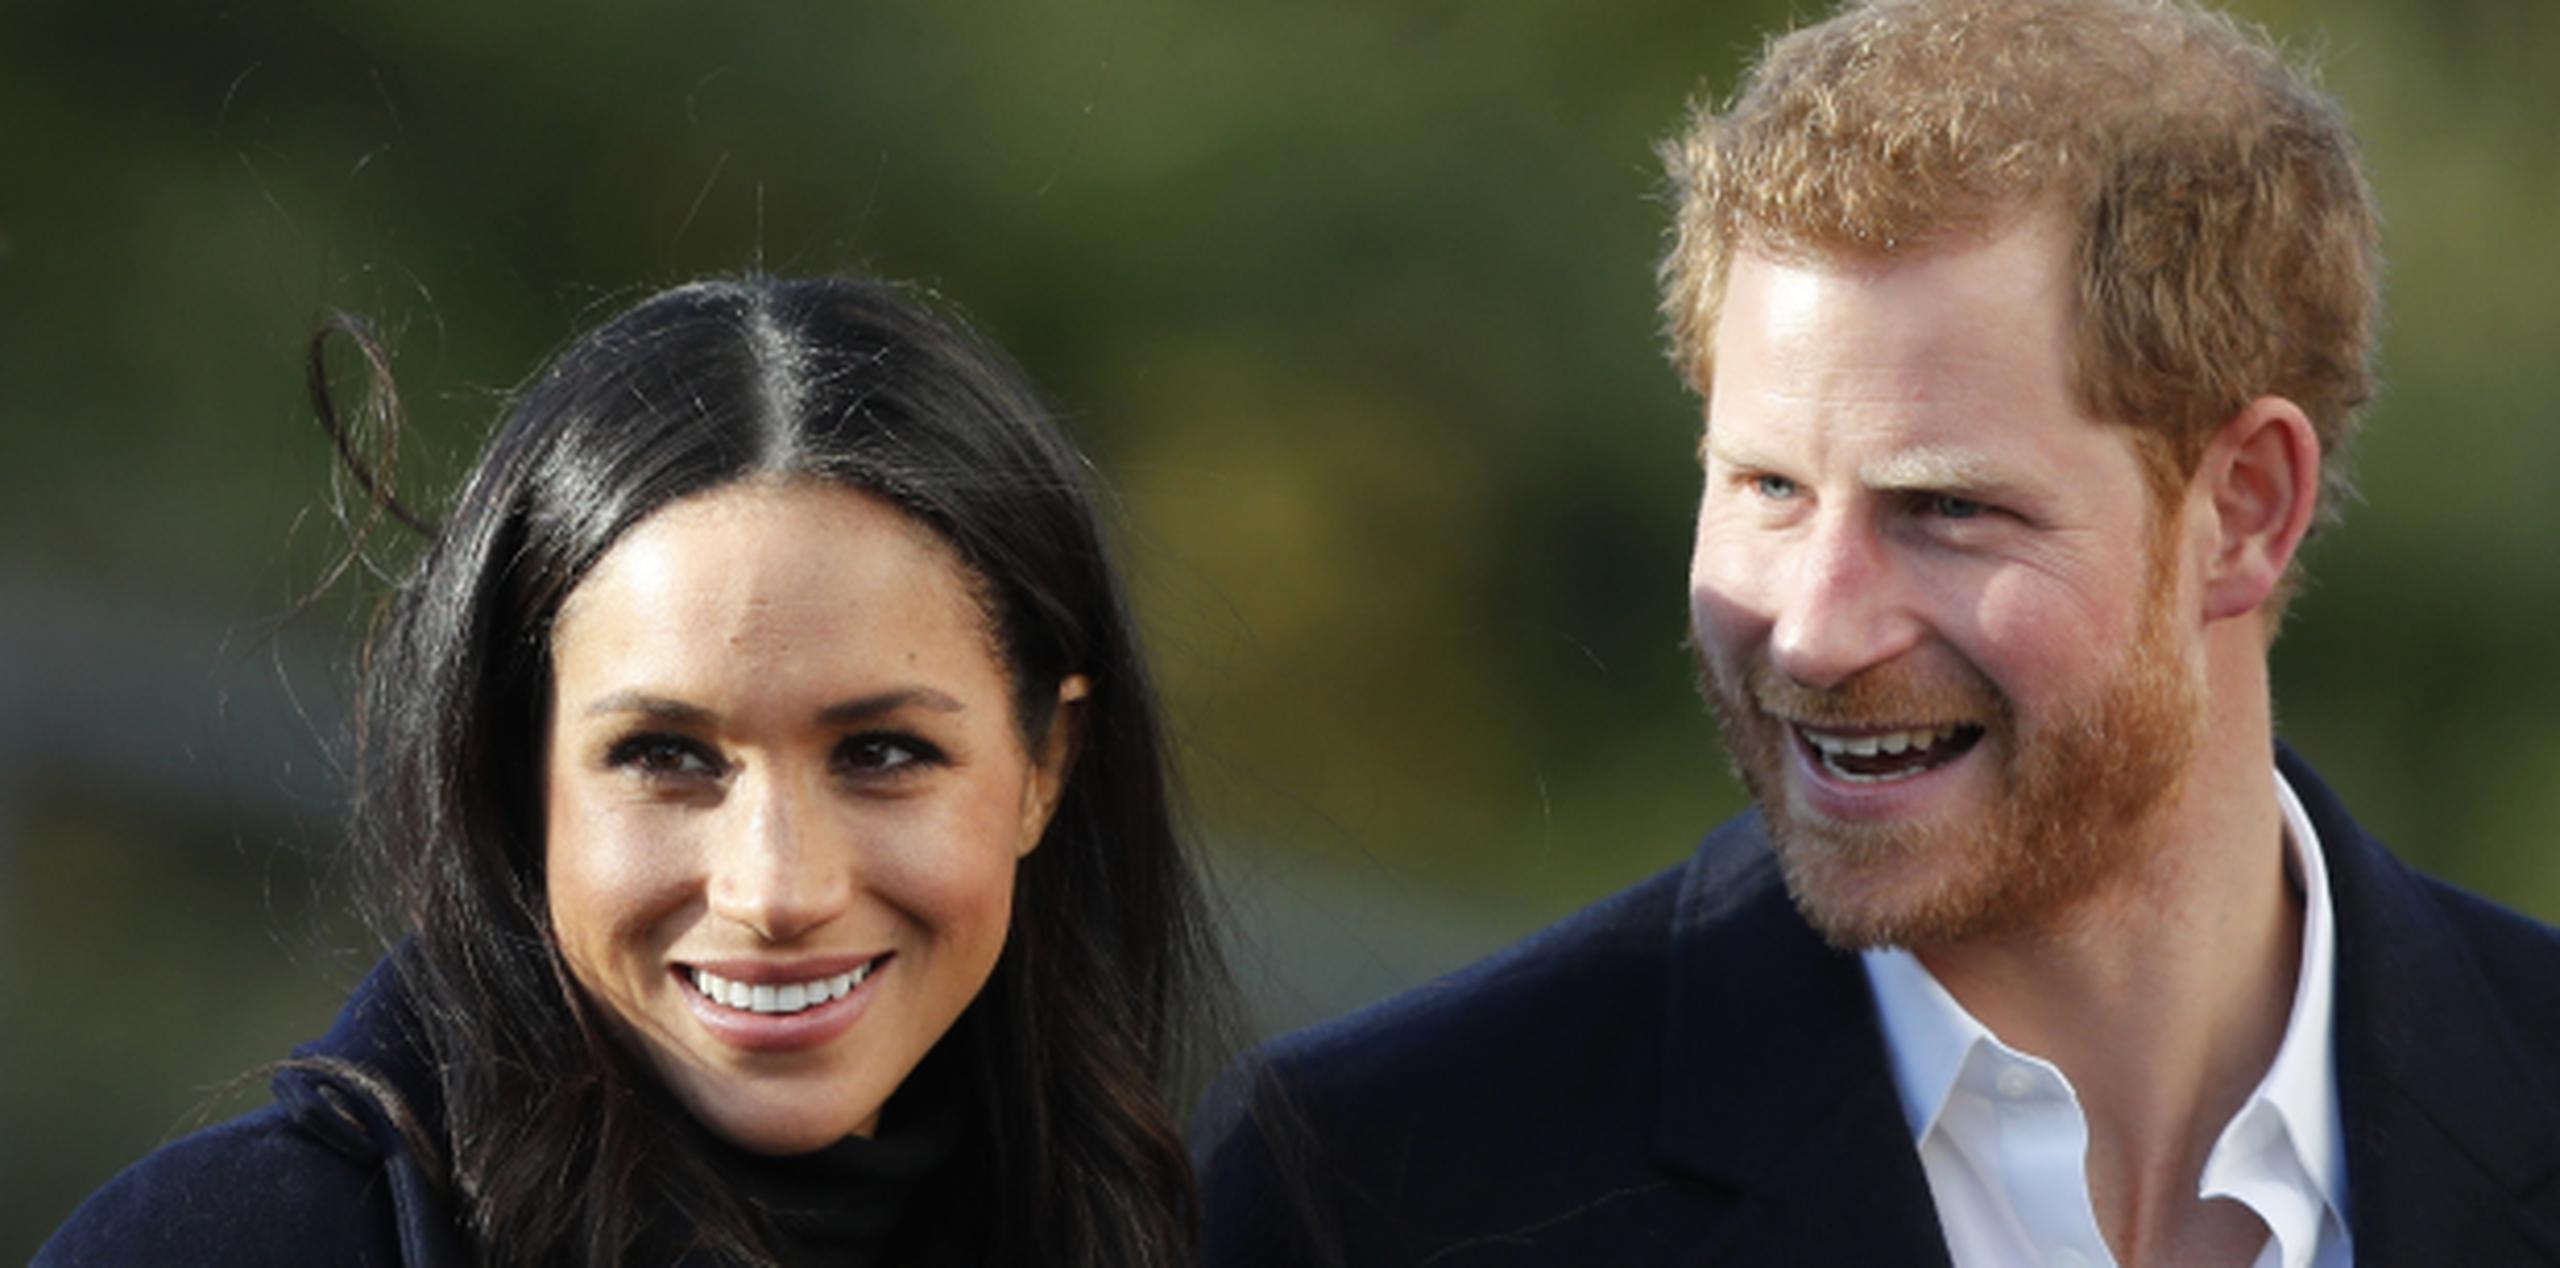 El enlace matrimonial se realizará el 19 de mayo en el castillo de Windsor. (AP / Frank Augstein)